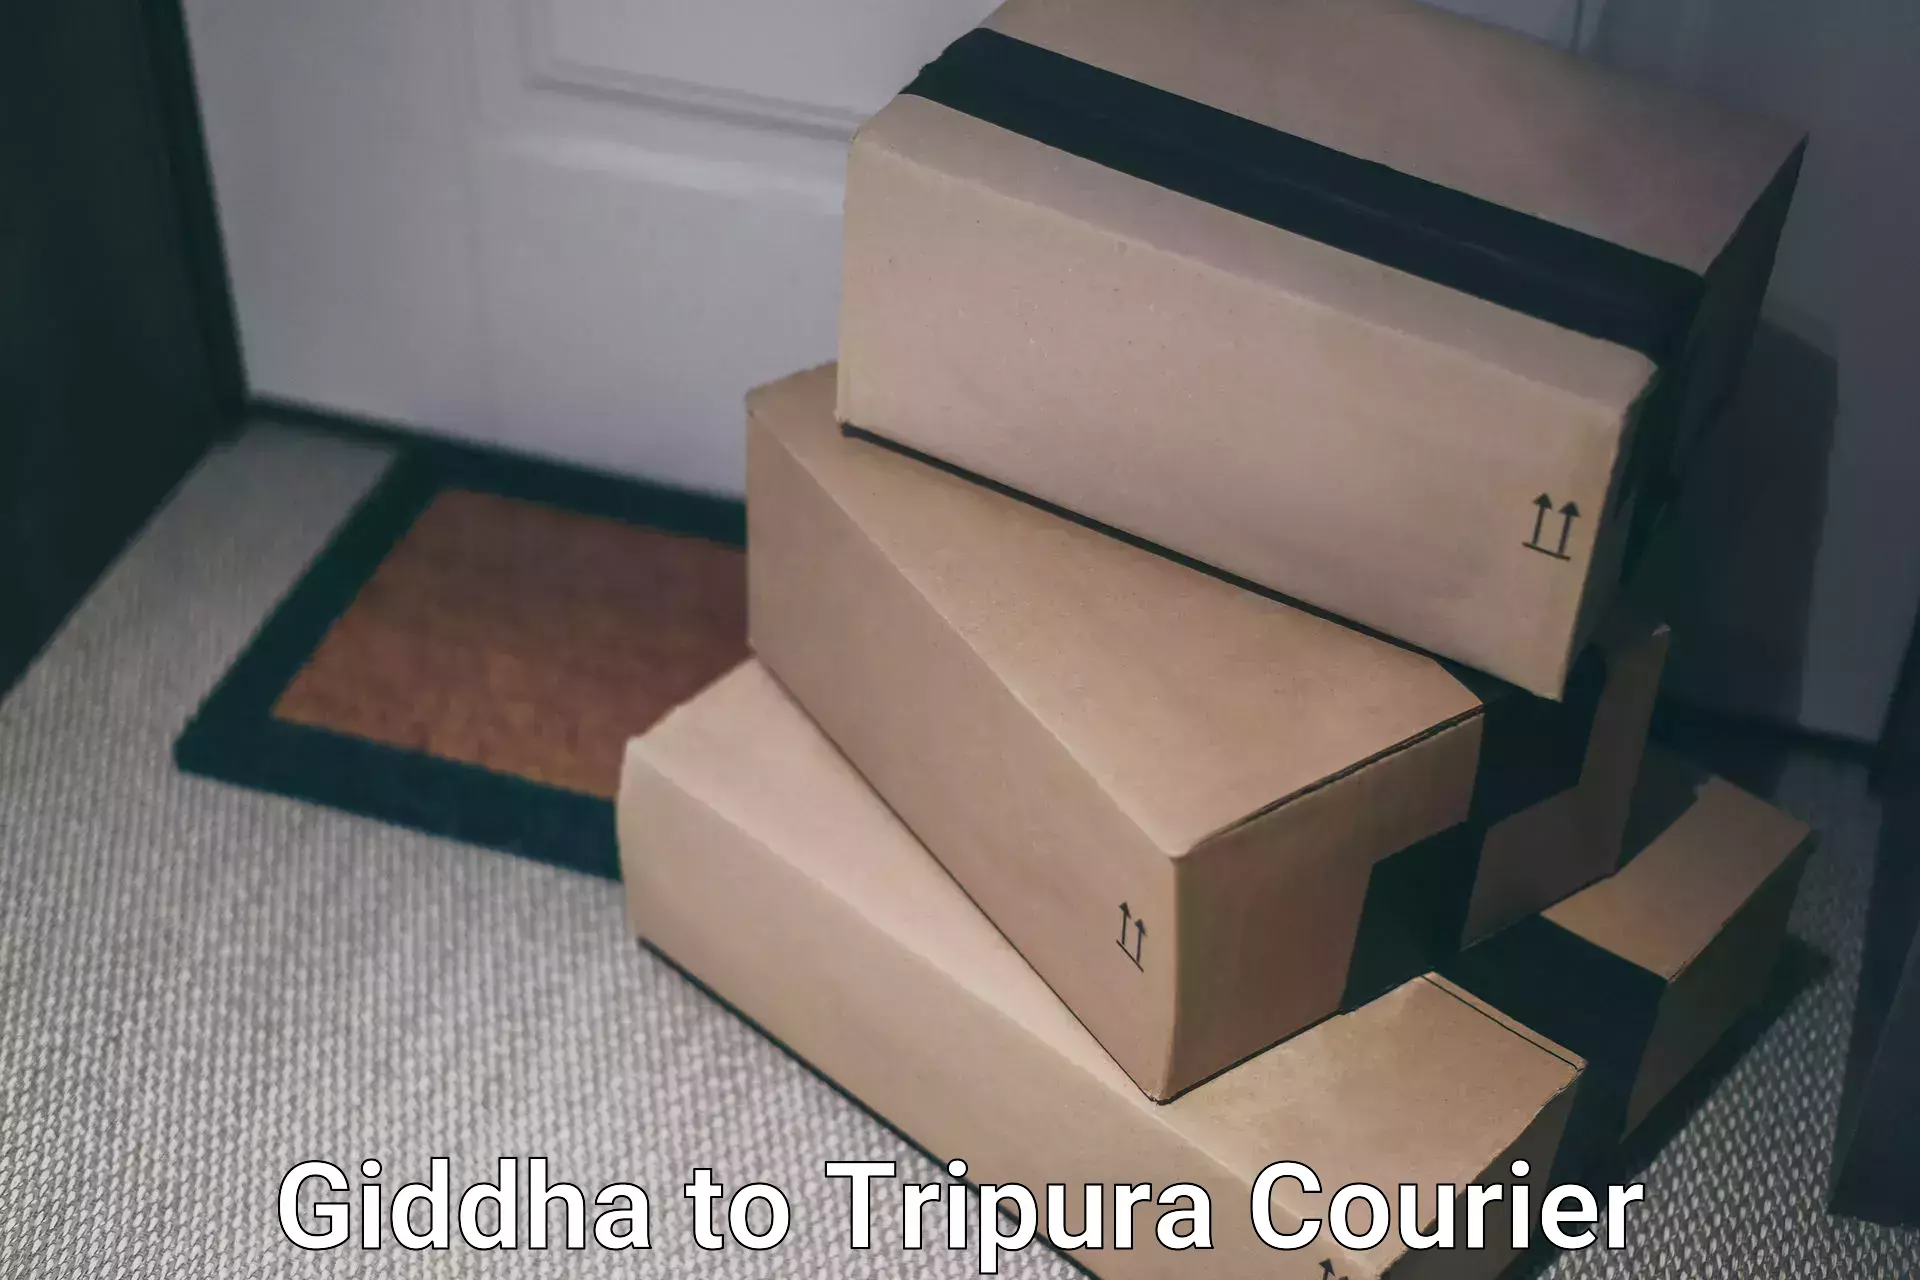 Customer-centric shipping Giddha to Amarpur Gomati